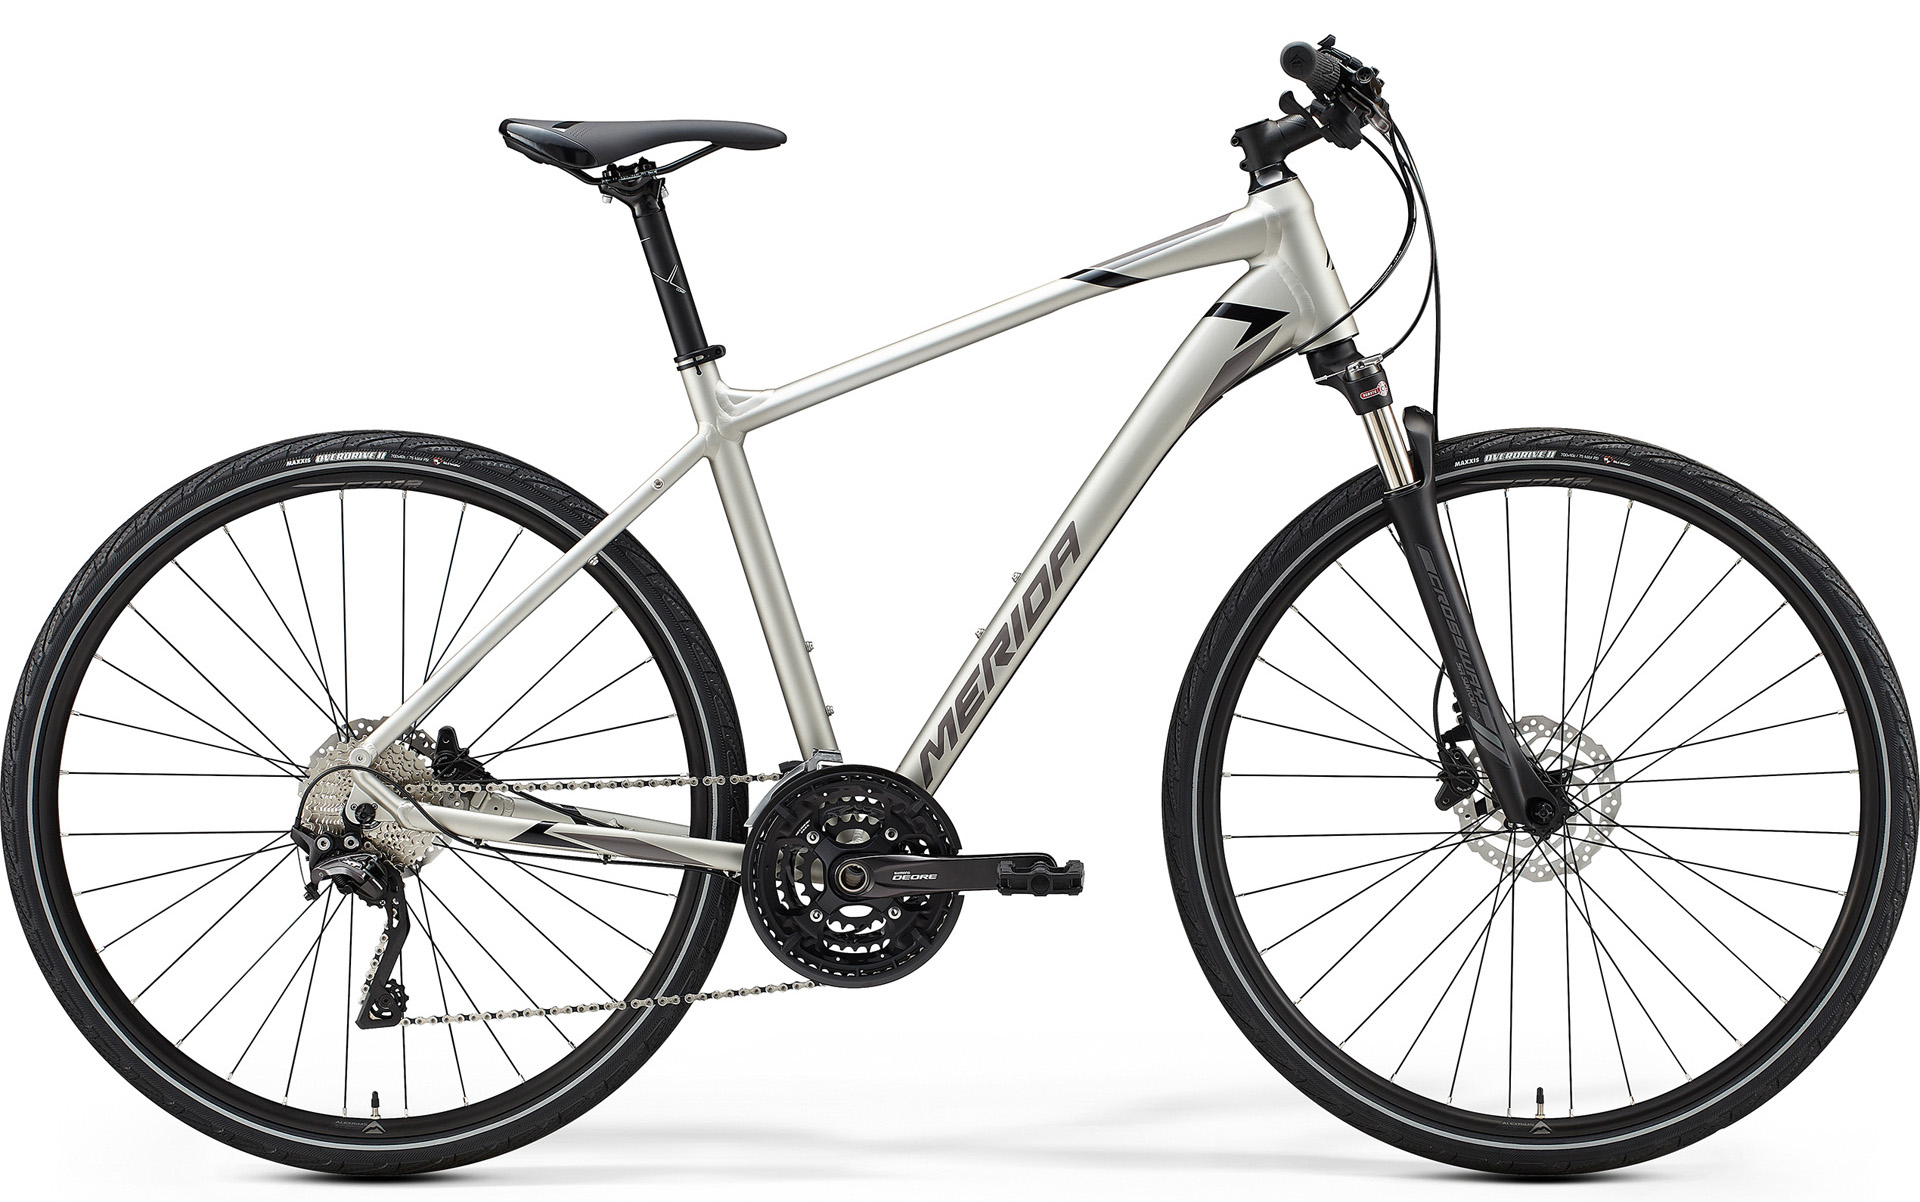  Отзывы о Городском велосипеде Merida Crossway 600 2020